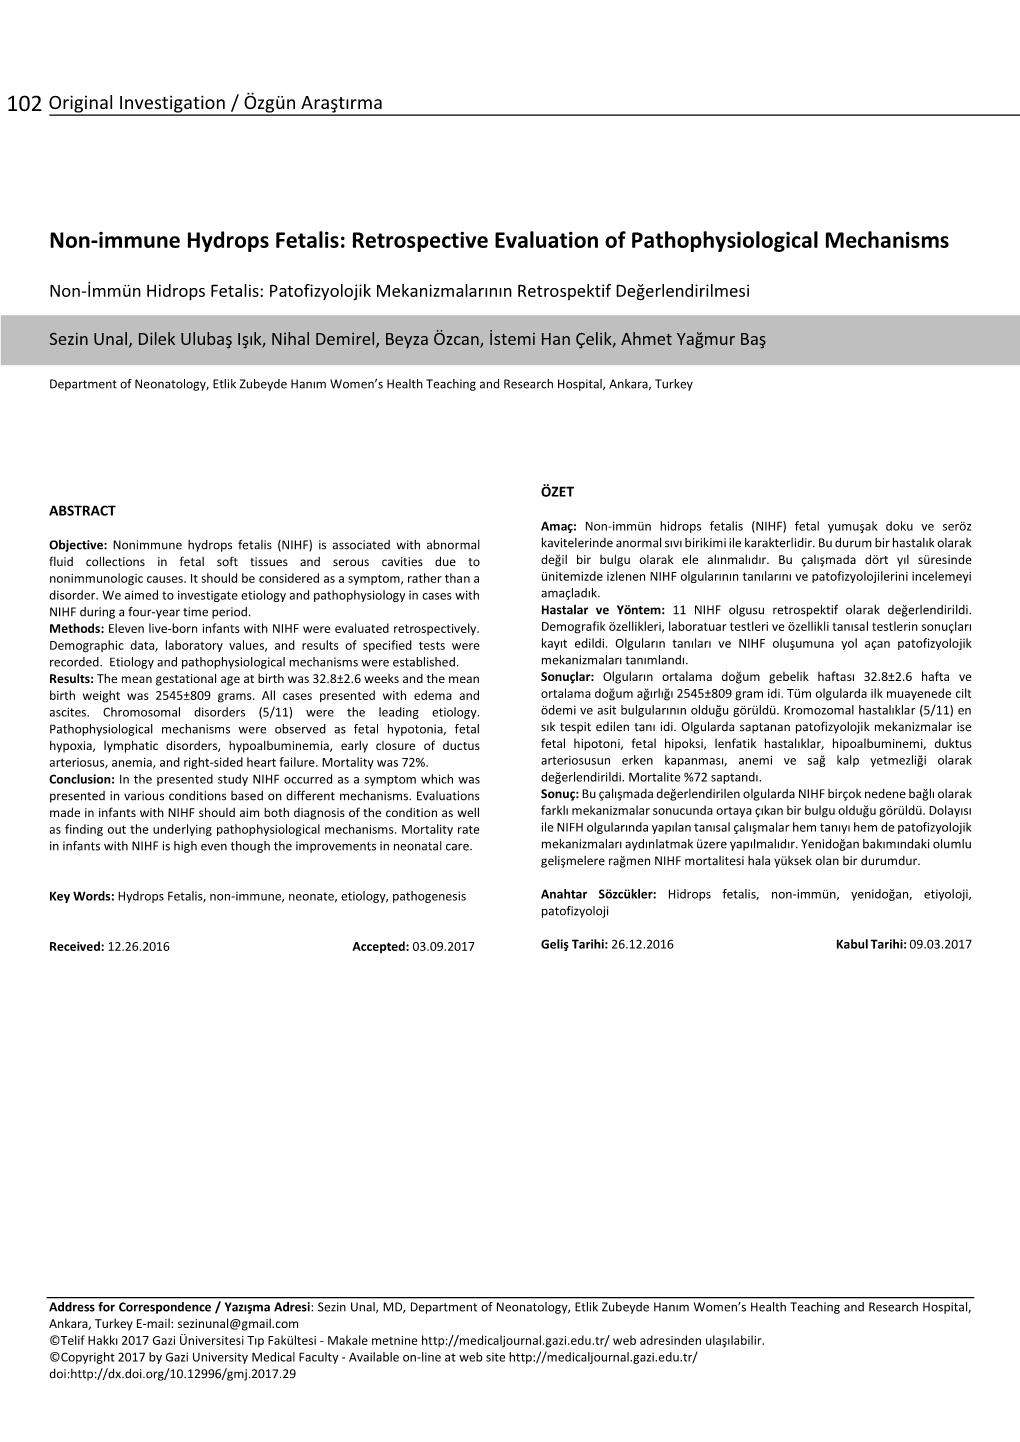 Non-Immune Hydrops Fetalis: Retrospective Evaluation of Pathophysiological Mechanisms